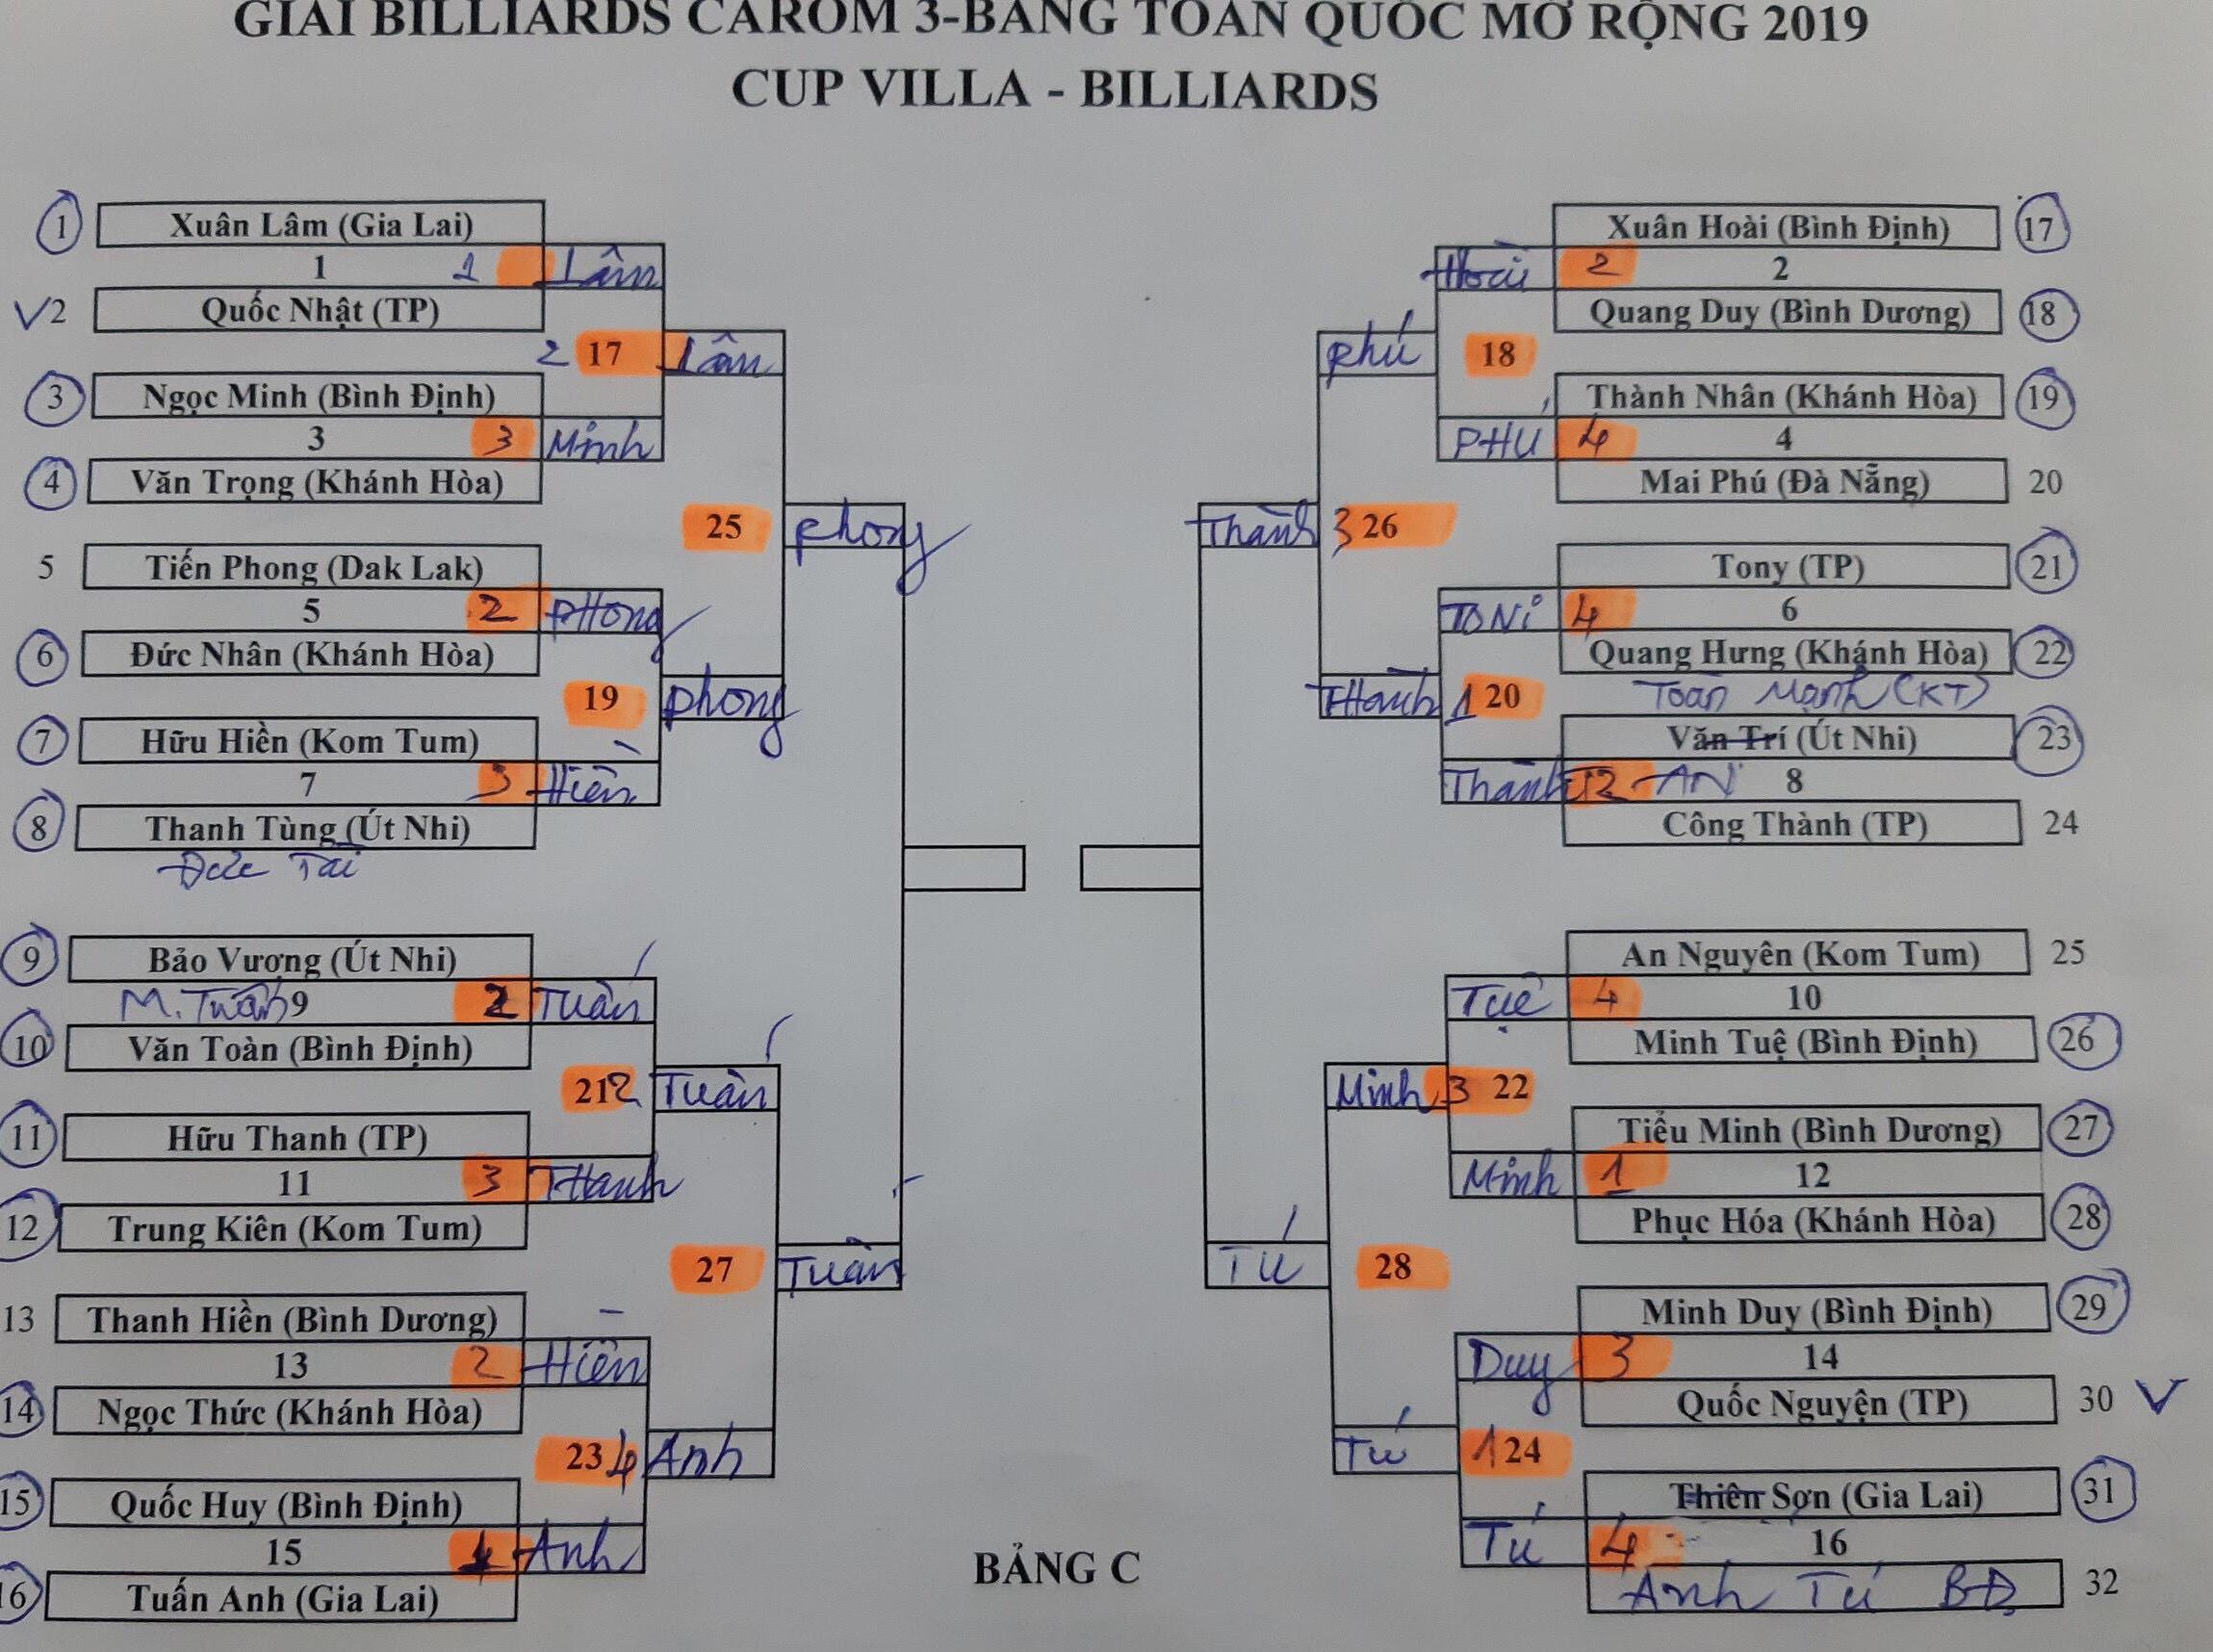 Kết quả ngày 1/6, lịch thi đấu ngày 2/6 Giải billiards carom 3 băng toàn quốc mở rộng 2019